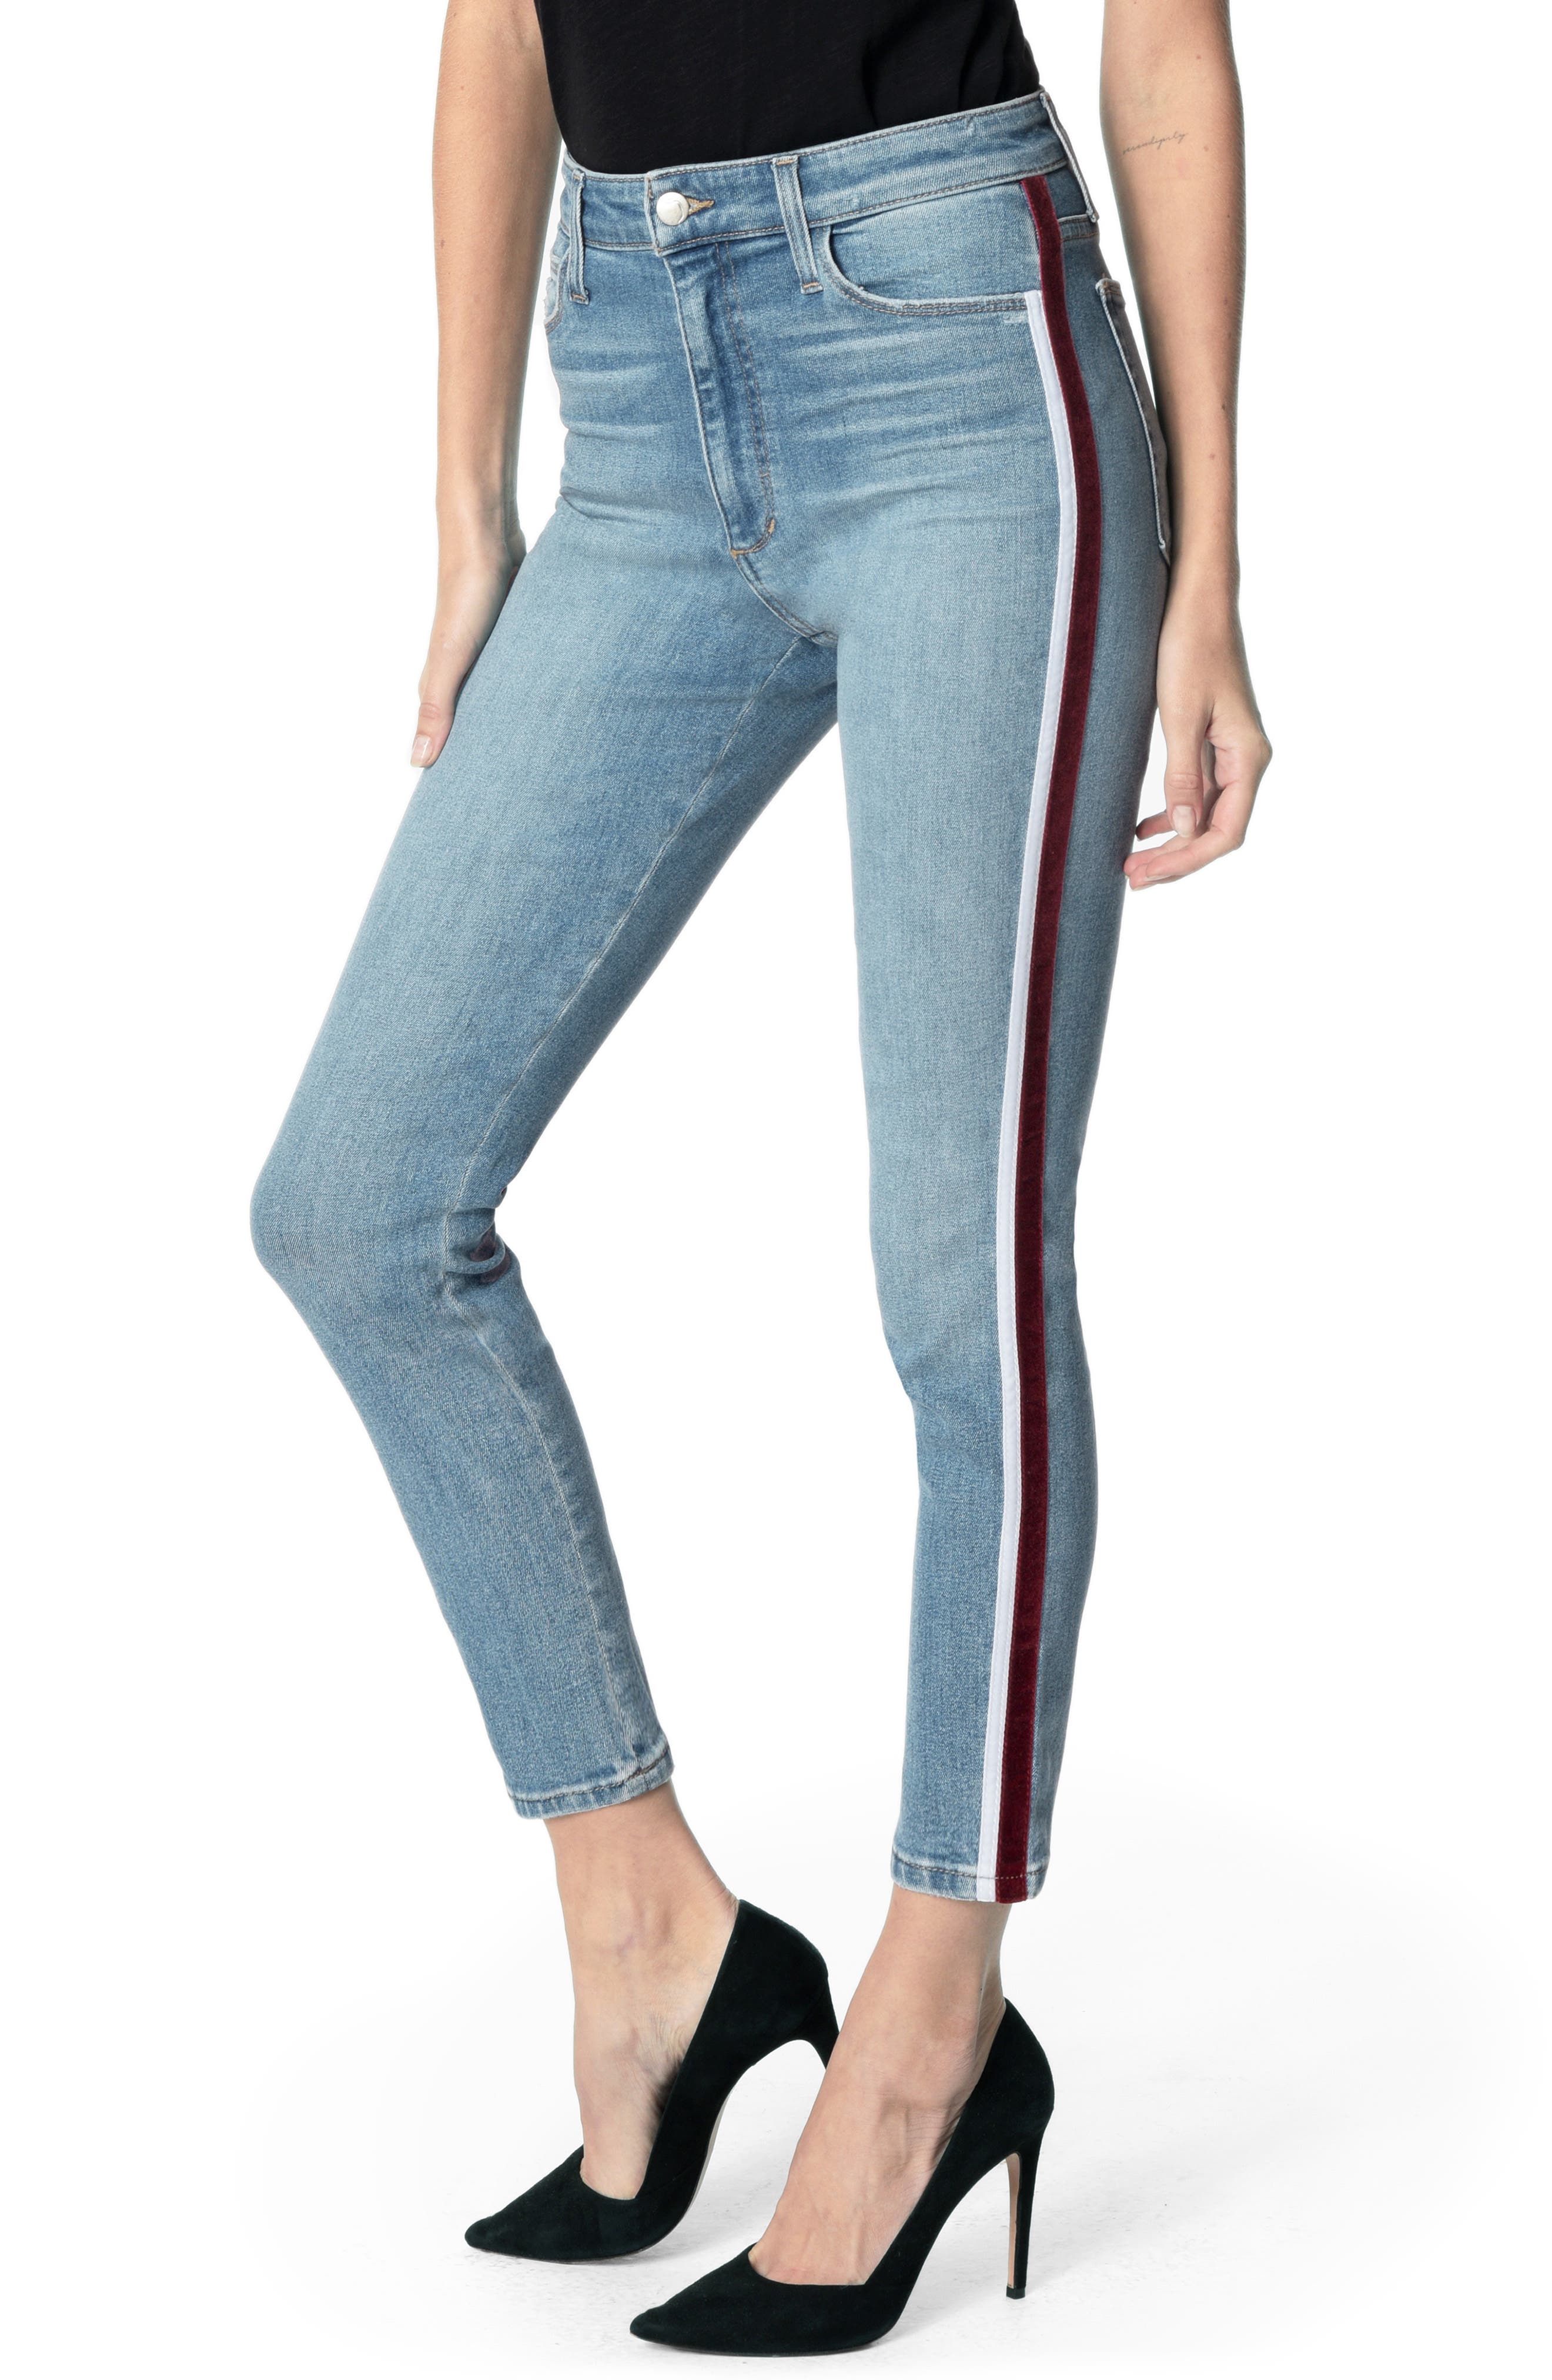 jeans with velvet stripe